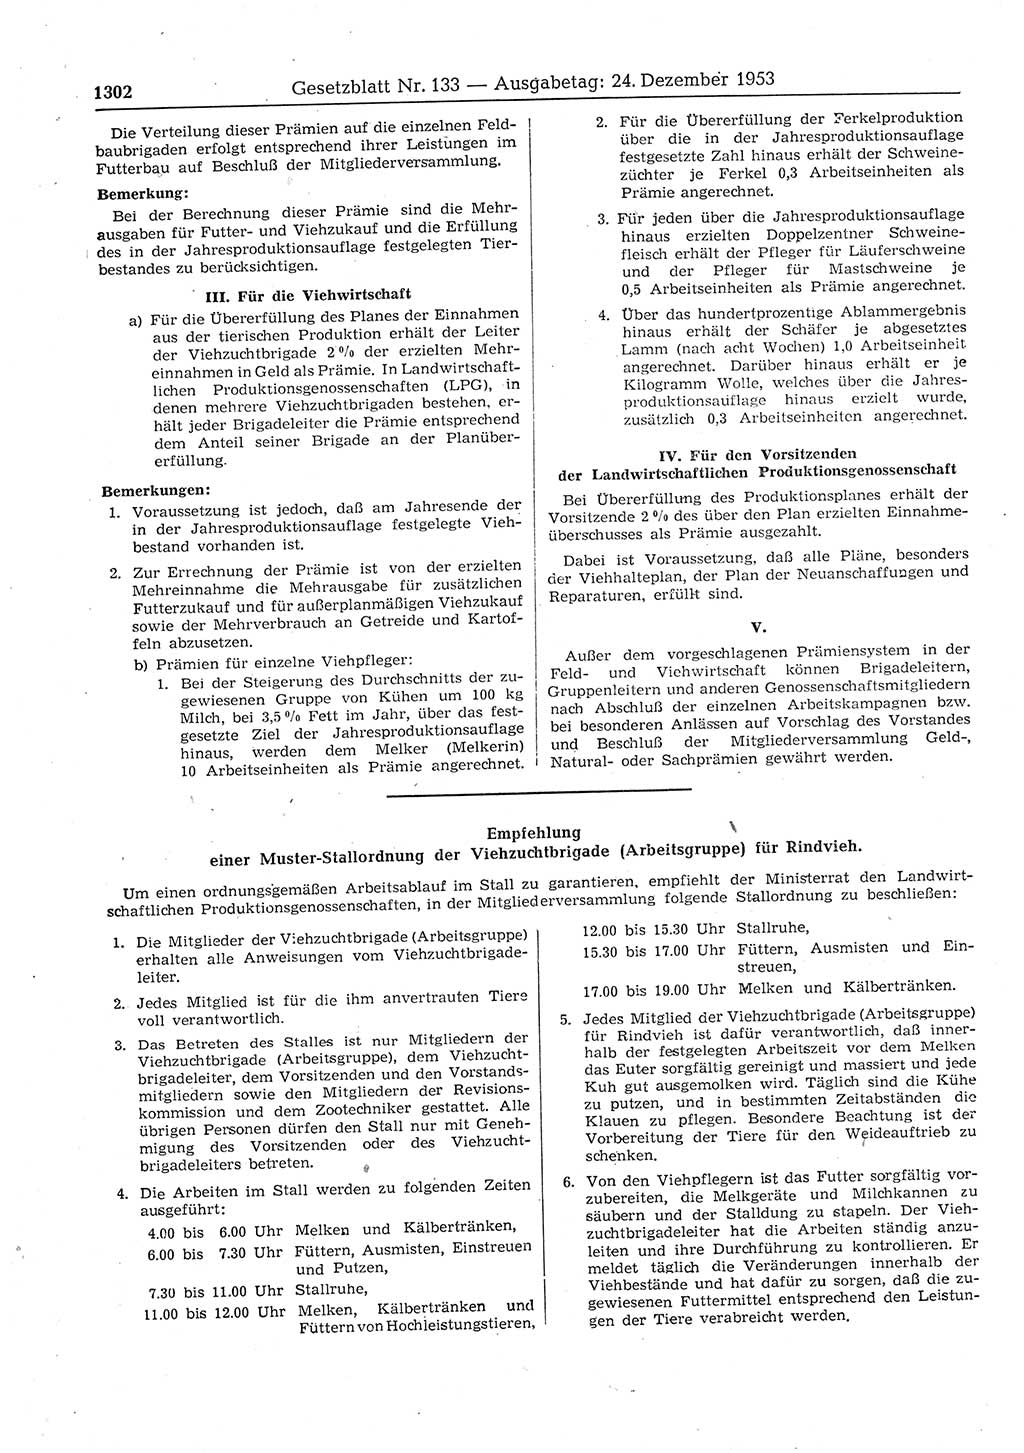 Gesetzblatt (GBl.) der Deutschen Demokratischen Republik (DDR) 1953, Seite 1302 (GBl. DDR 1953, S. 1302)